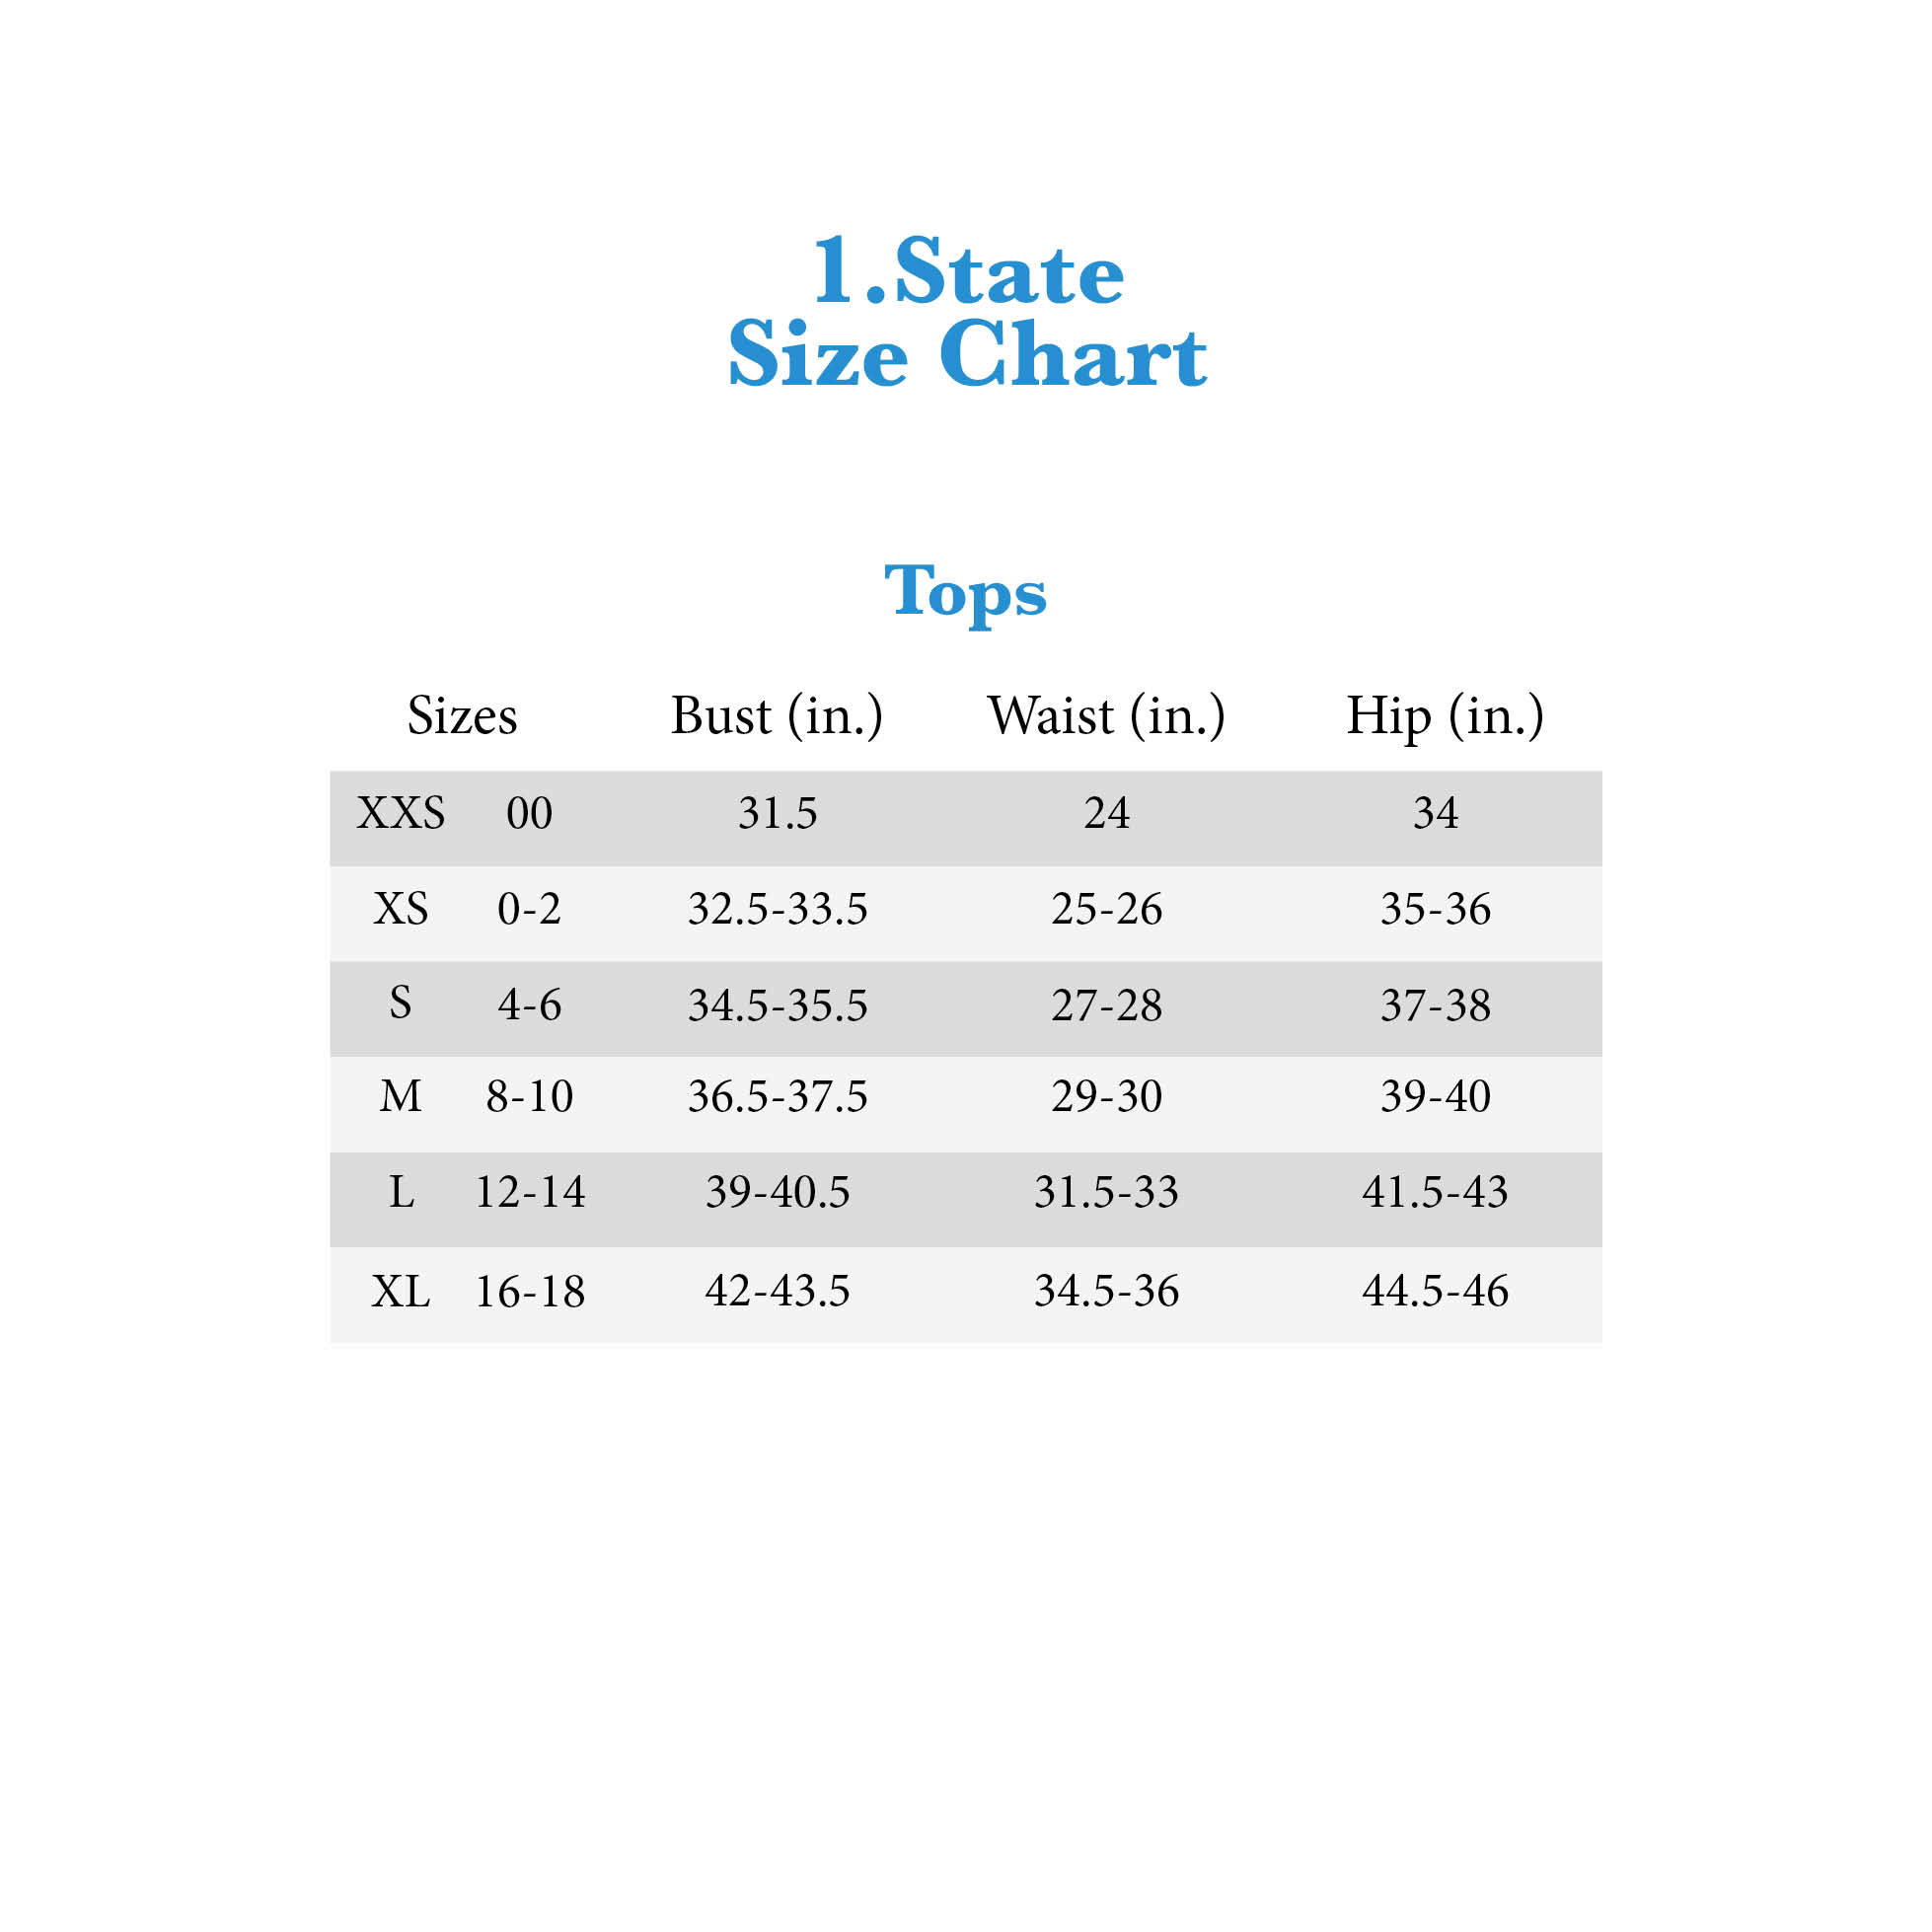 State Size Chart